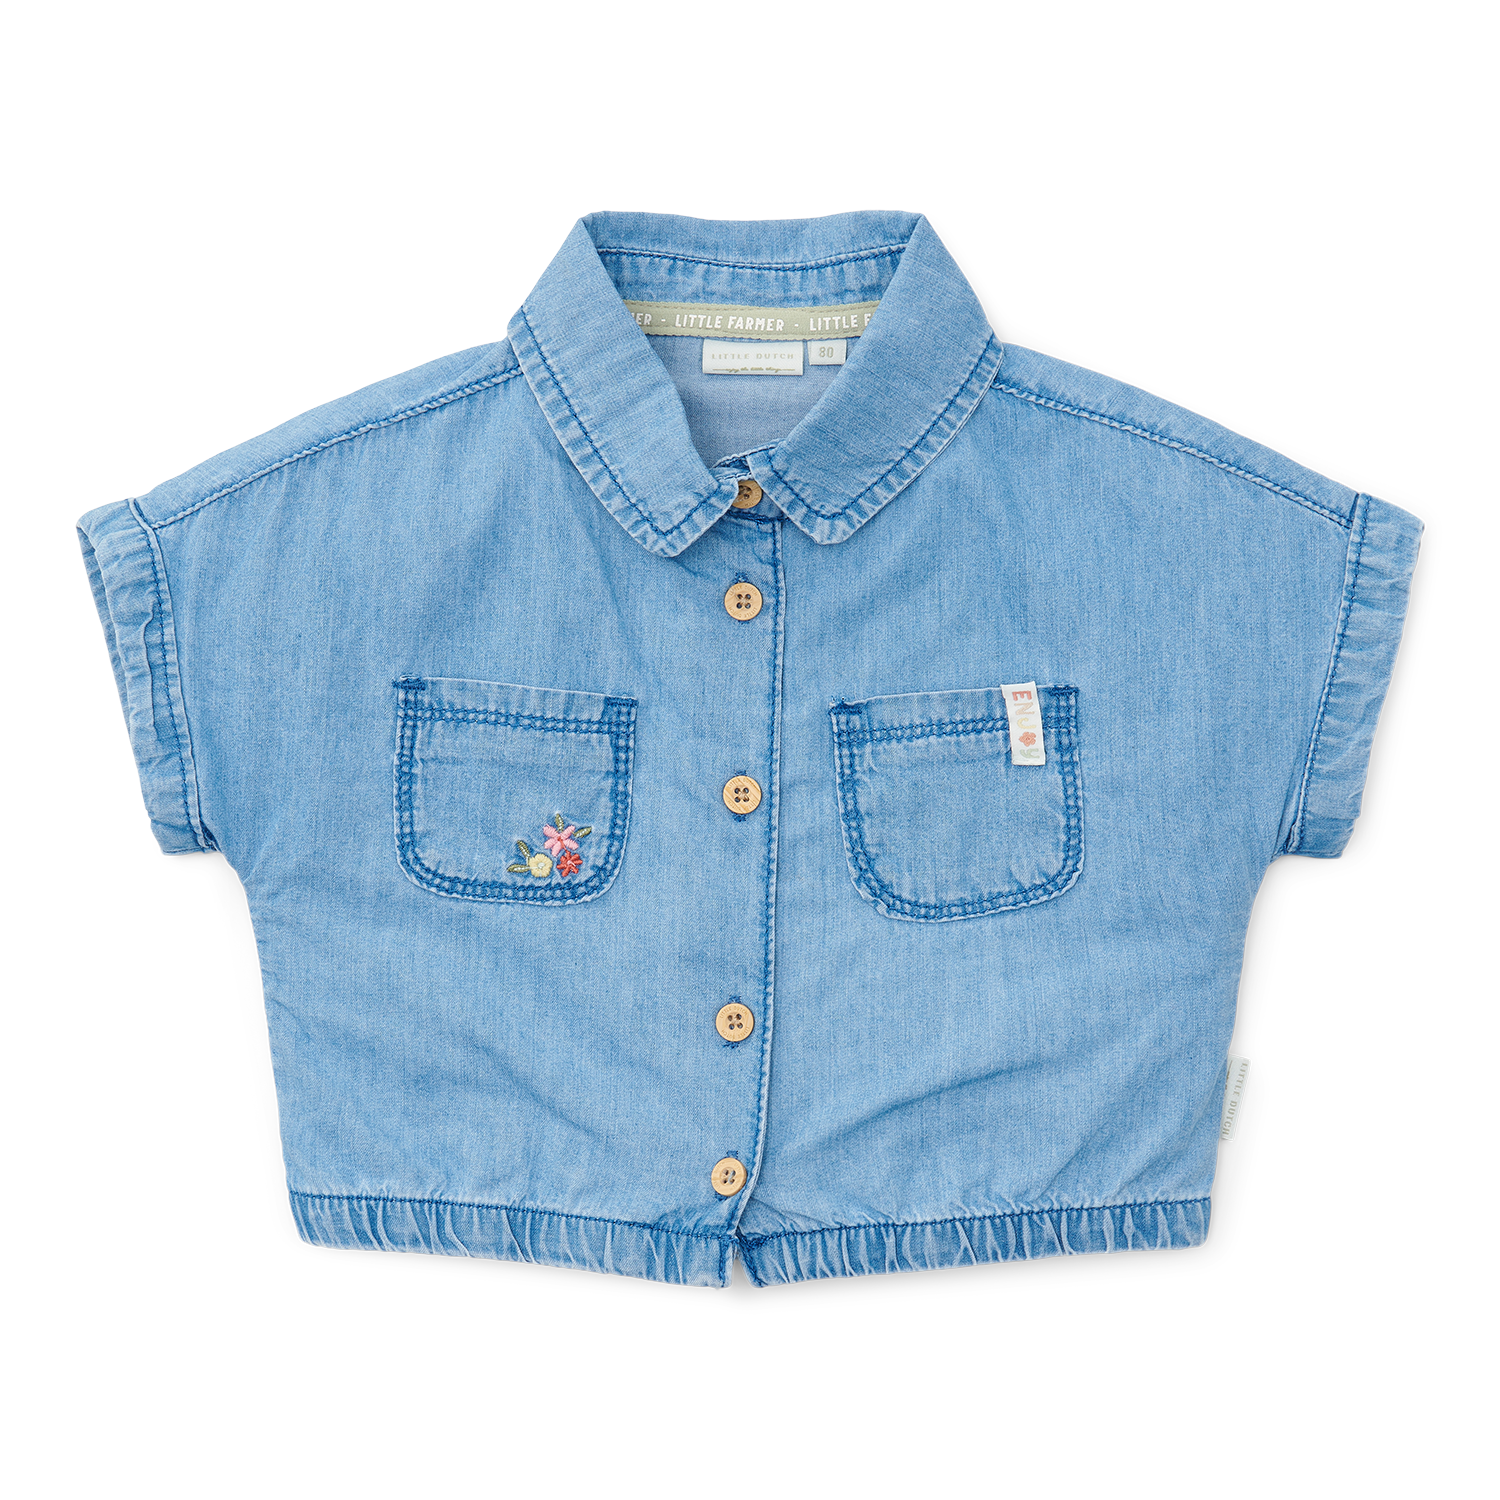 T-Shirt / Bluse Denim Little Farm jeans (Gr. 104)